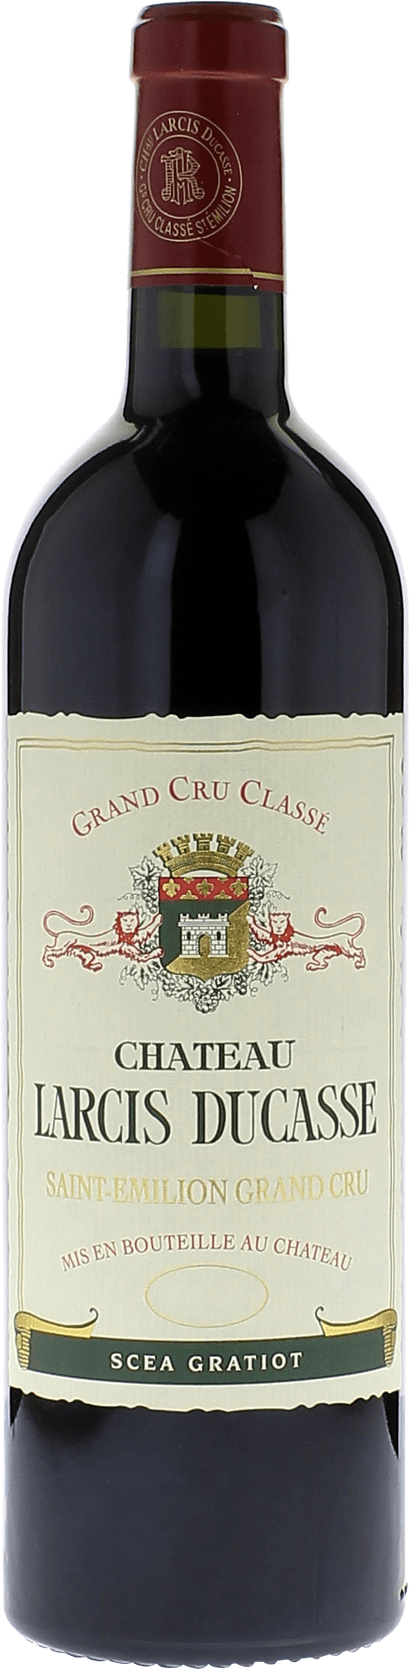 Larcis ducasse 2016 Grand cru class Saint-Emilion, Bordeaux rouge